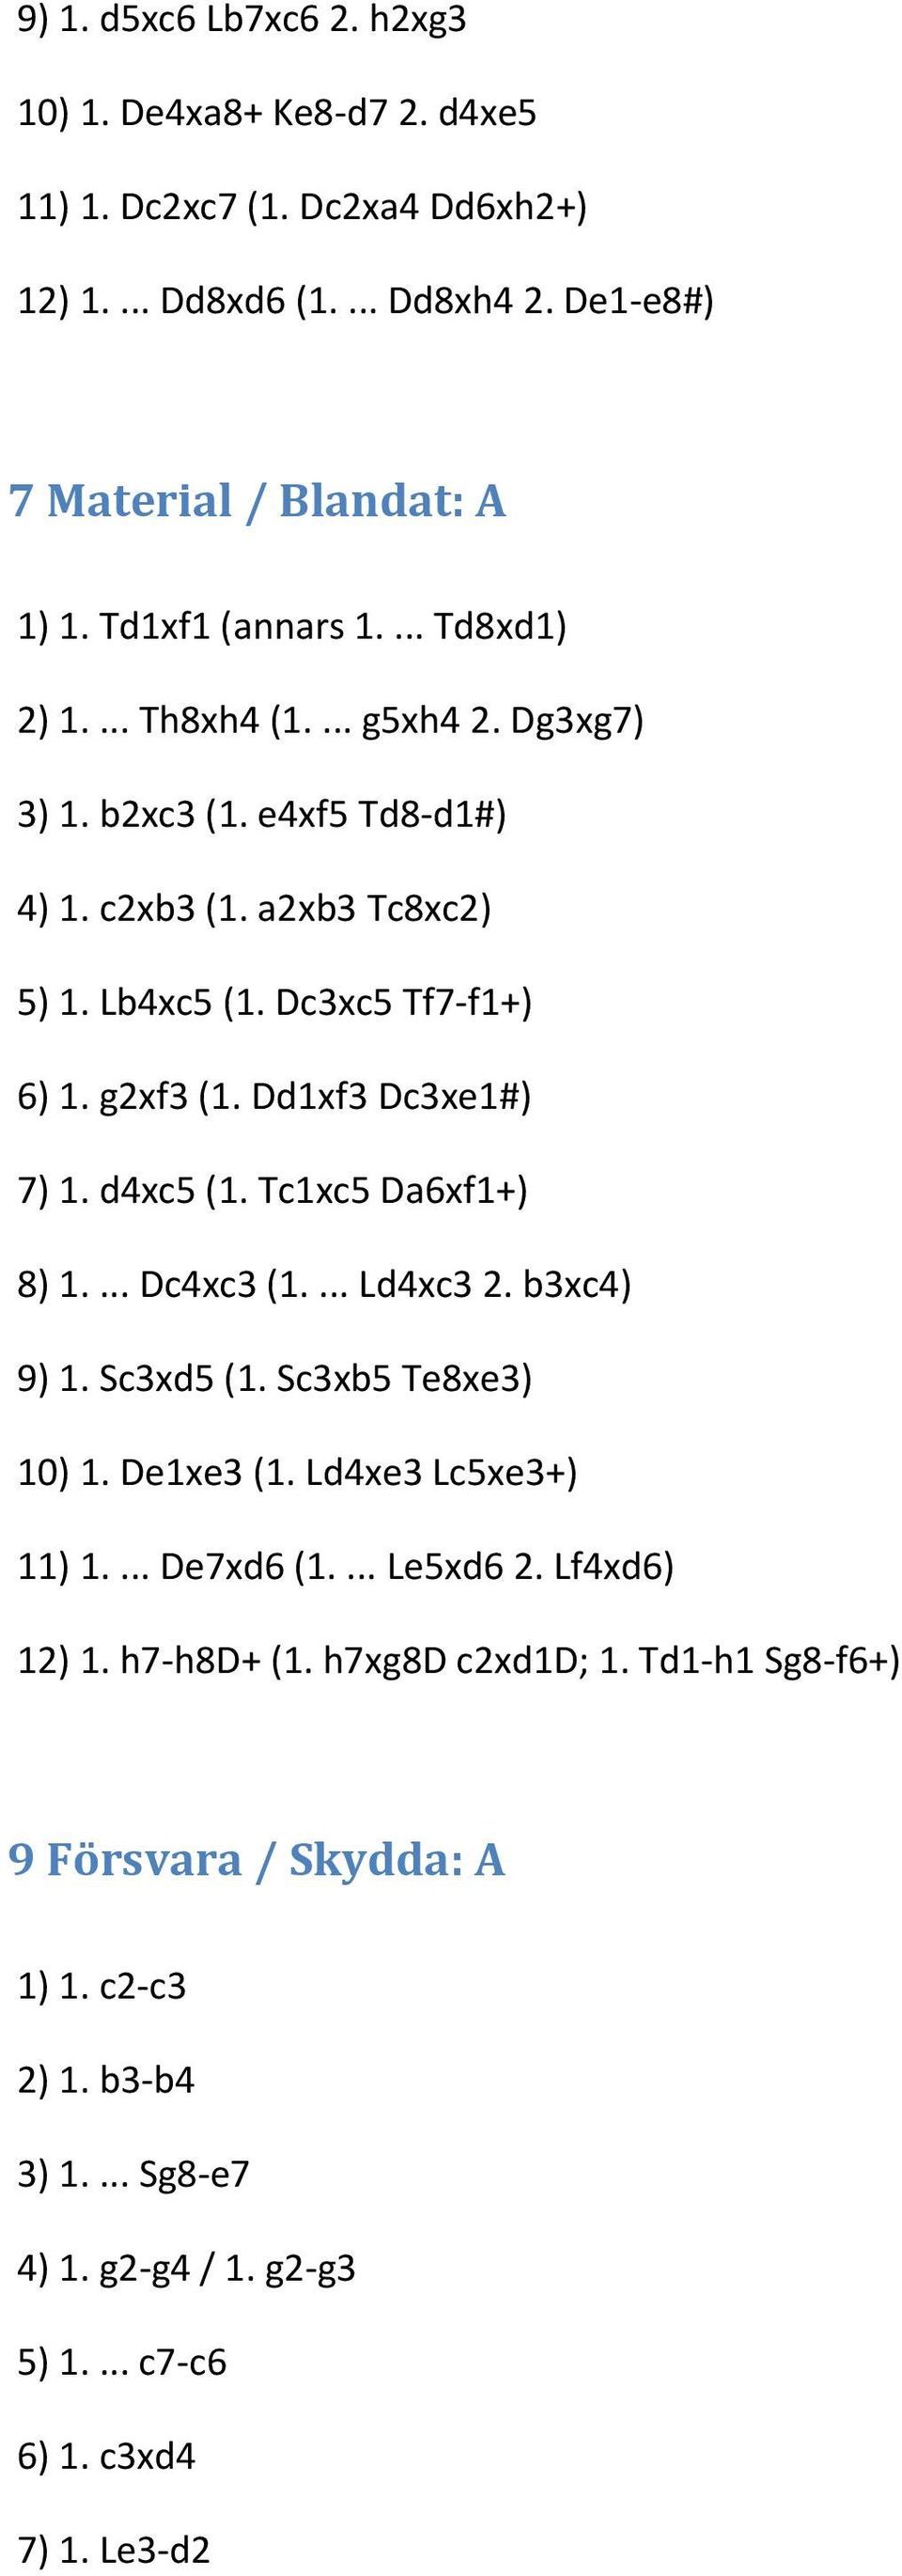 Dd1xf3 Dc3xe1#) 7) 1. d4xc5 (1. Tc1xc5 Da6xf1+) 8) 1.... Dc4xc3 (1.... Ld4xc3 2. b3xc4) 9) 1. Sc3xd5 (1. Sc3xb5 Te8xe3) 10) 1. De1xe3 (1. Ld4xe3 Lc5xe3+) 11) 1.... De7xd6 (1.